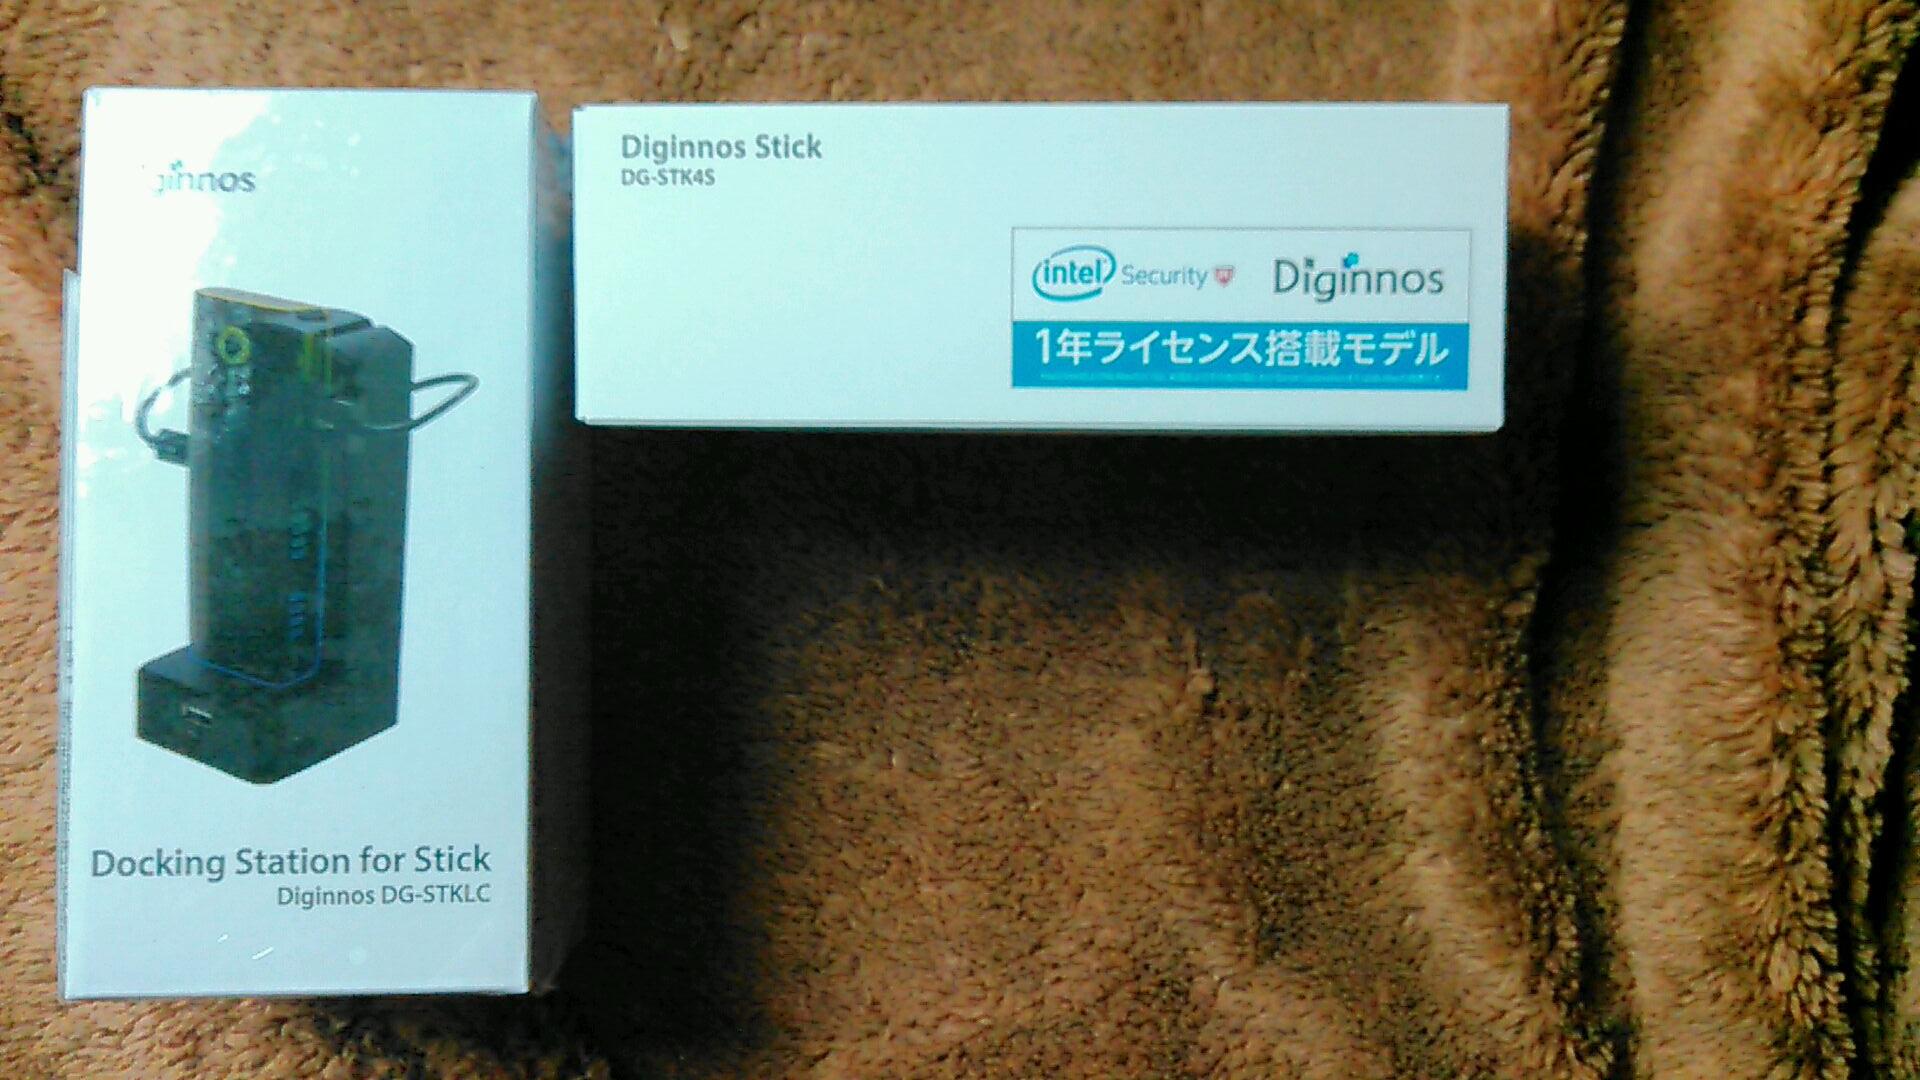 モバイルバッテリーで起動可能なスティックpc Diginnos Stick Dg Stk4s Atomz8500とメモリ4g Diginnos Stick Dg Stk4s スティック型パソコン Windows 10 のレビュー ジグソー レビューメディア